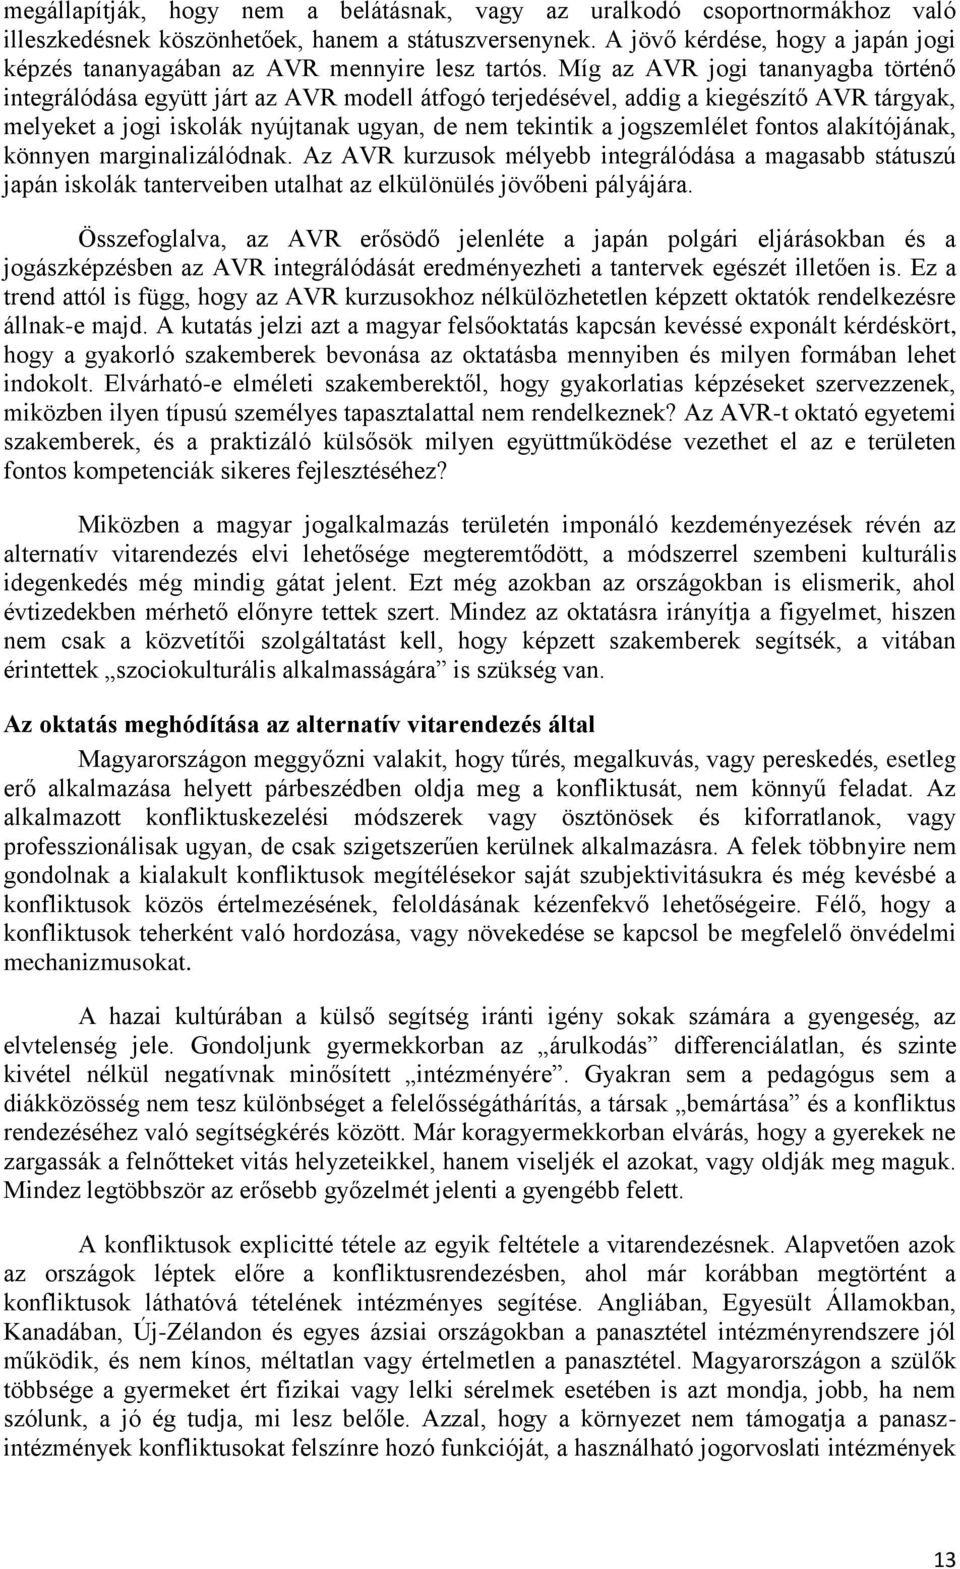 Magyar postatörténet – Wikipédia